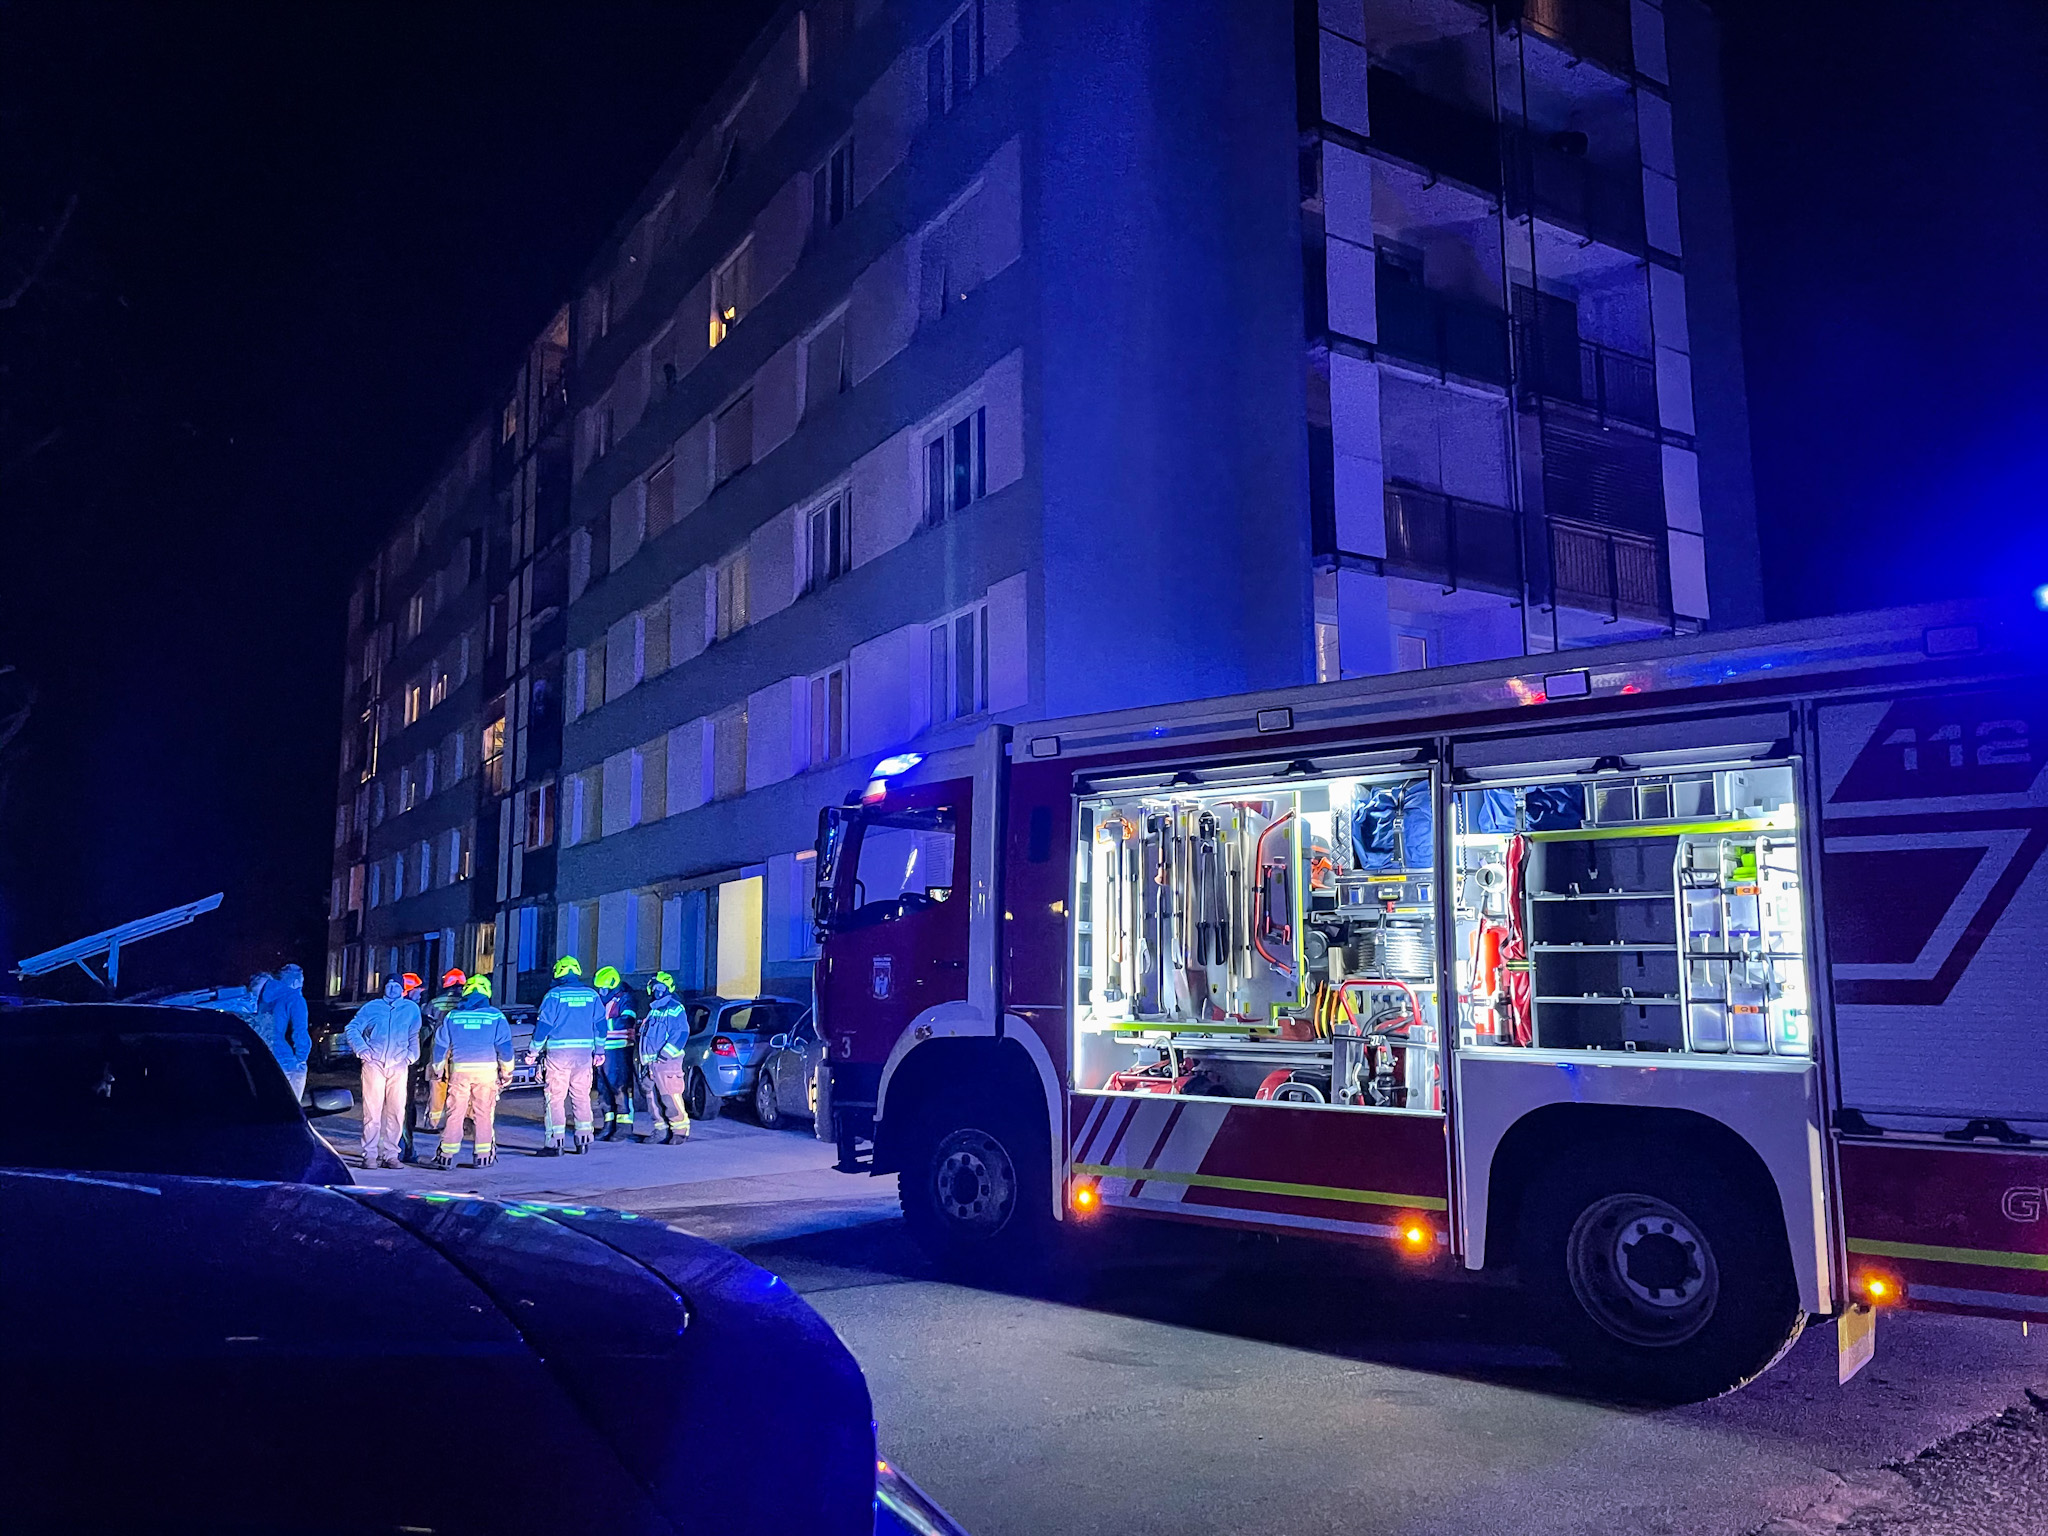 FOTO: Požar v stanovanjskem bloku na Goriški ulici, zagorela je hrana na štedilniku